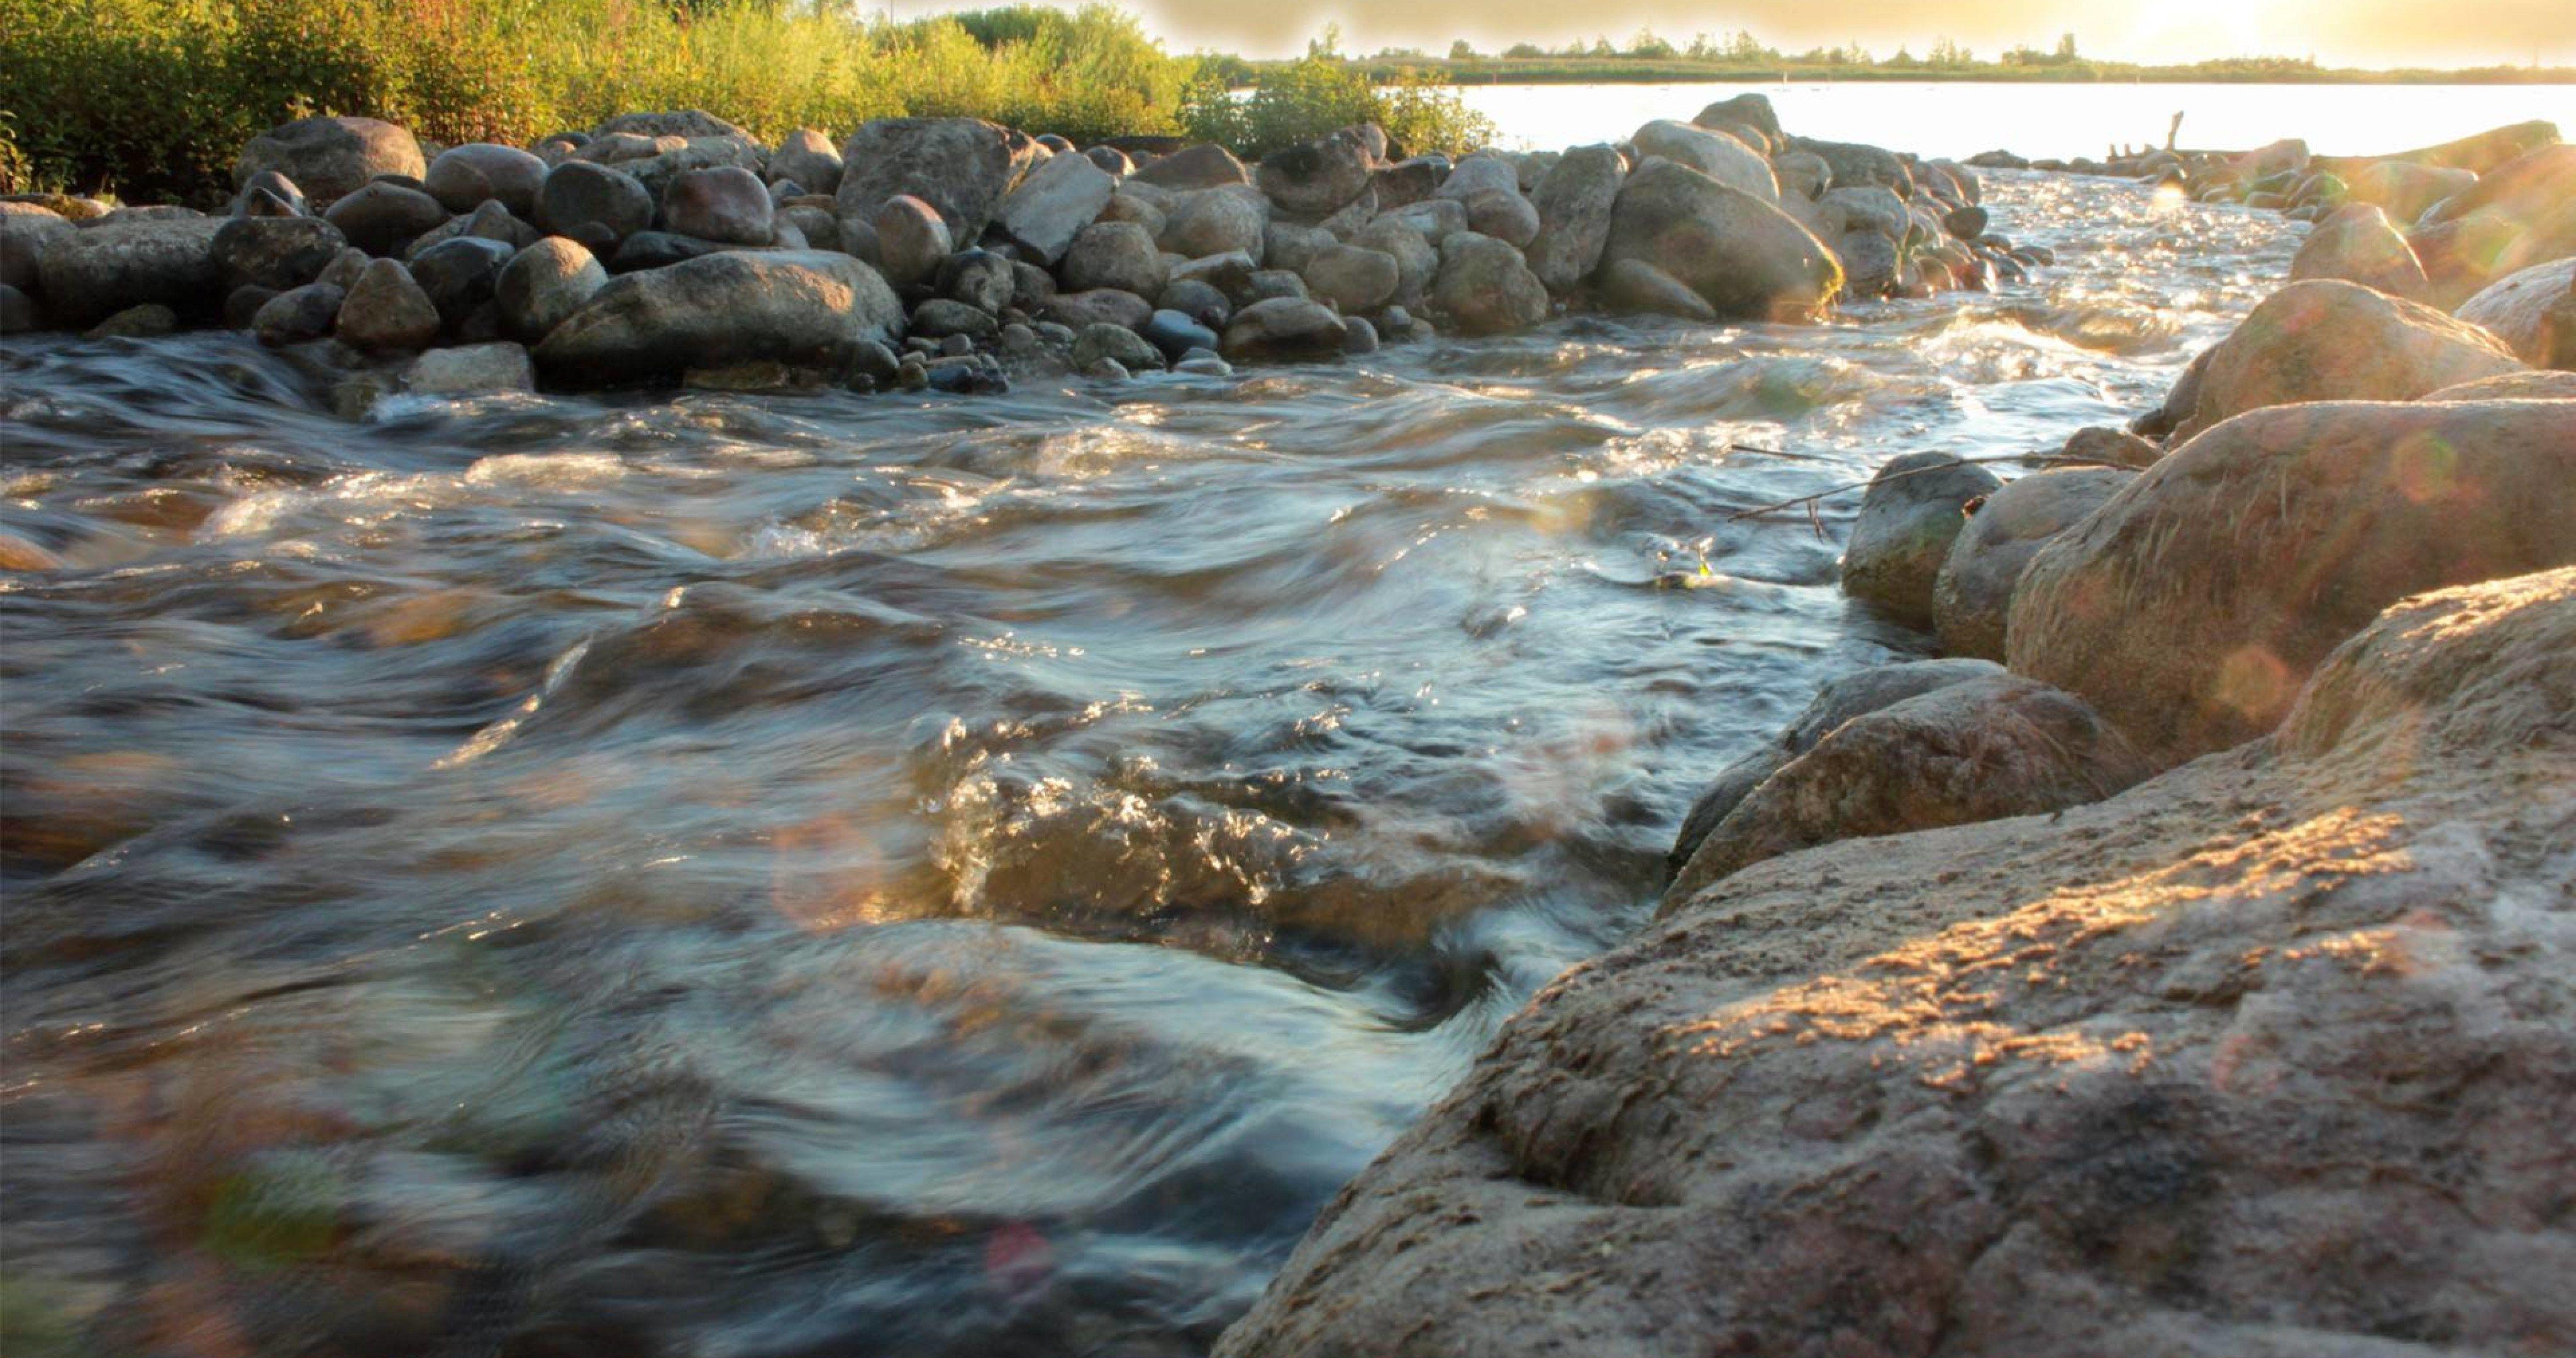 Stone river. Вода река. Ручей с камнями. Каменистый берег реки. Камни в реке.